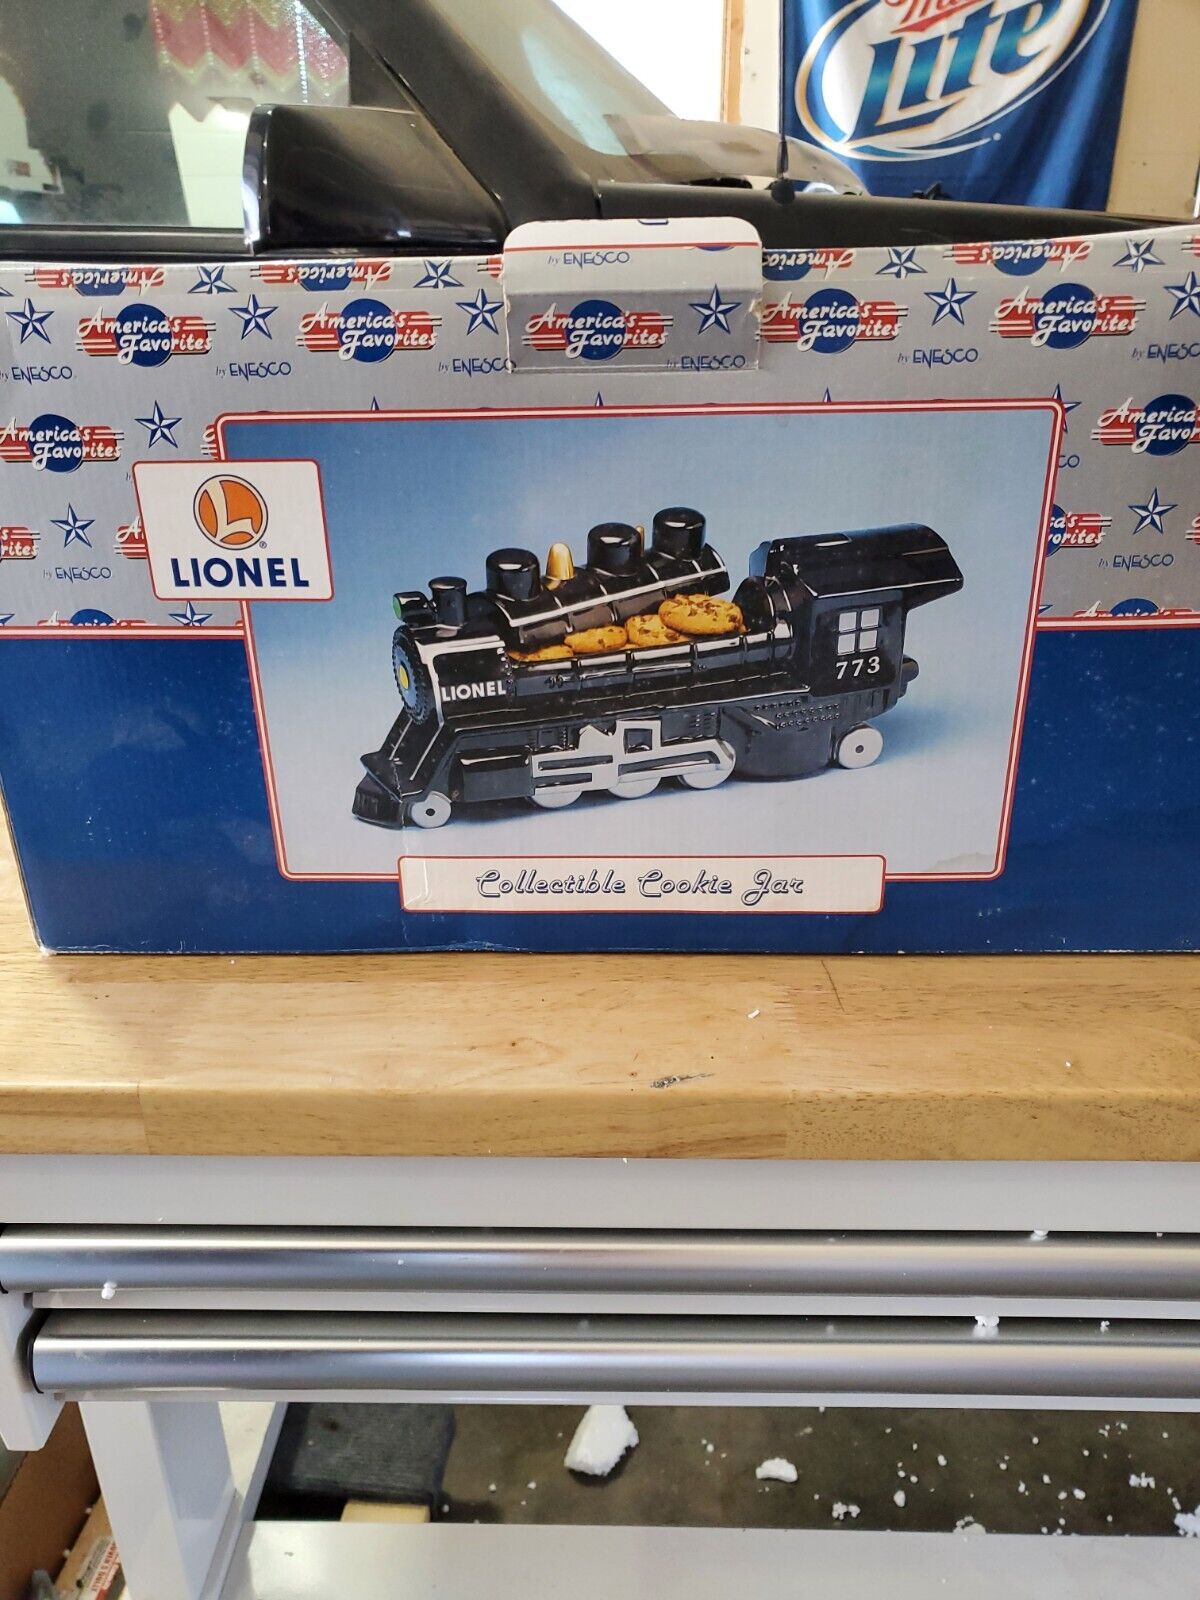 Enesco Lionel Collectible Train Locomotive 685526